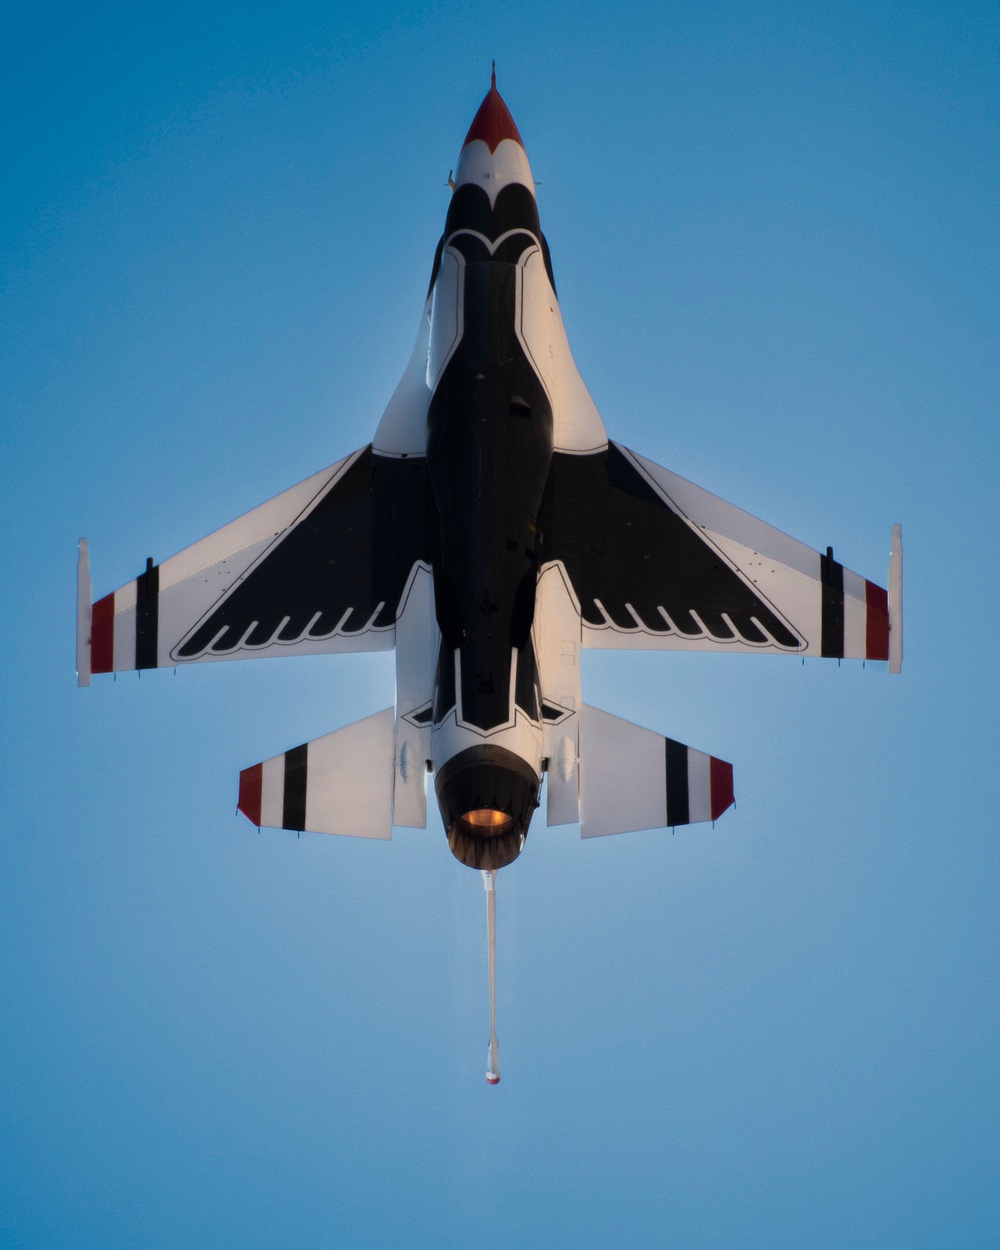 Thunderbirds headline Holloman Air Show